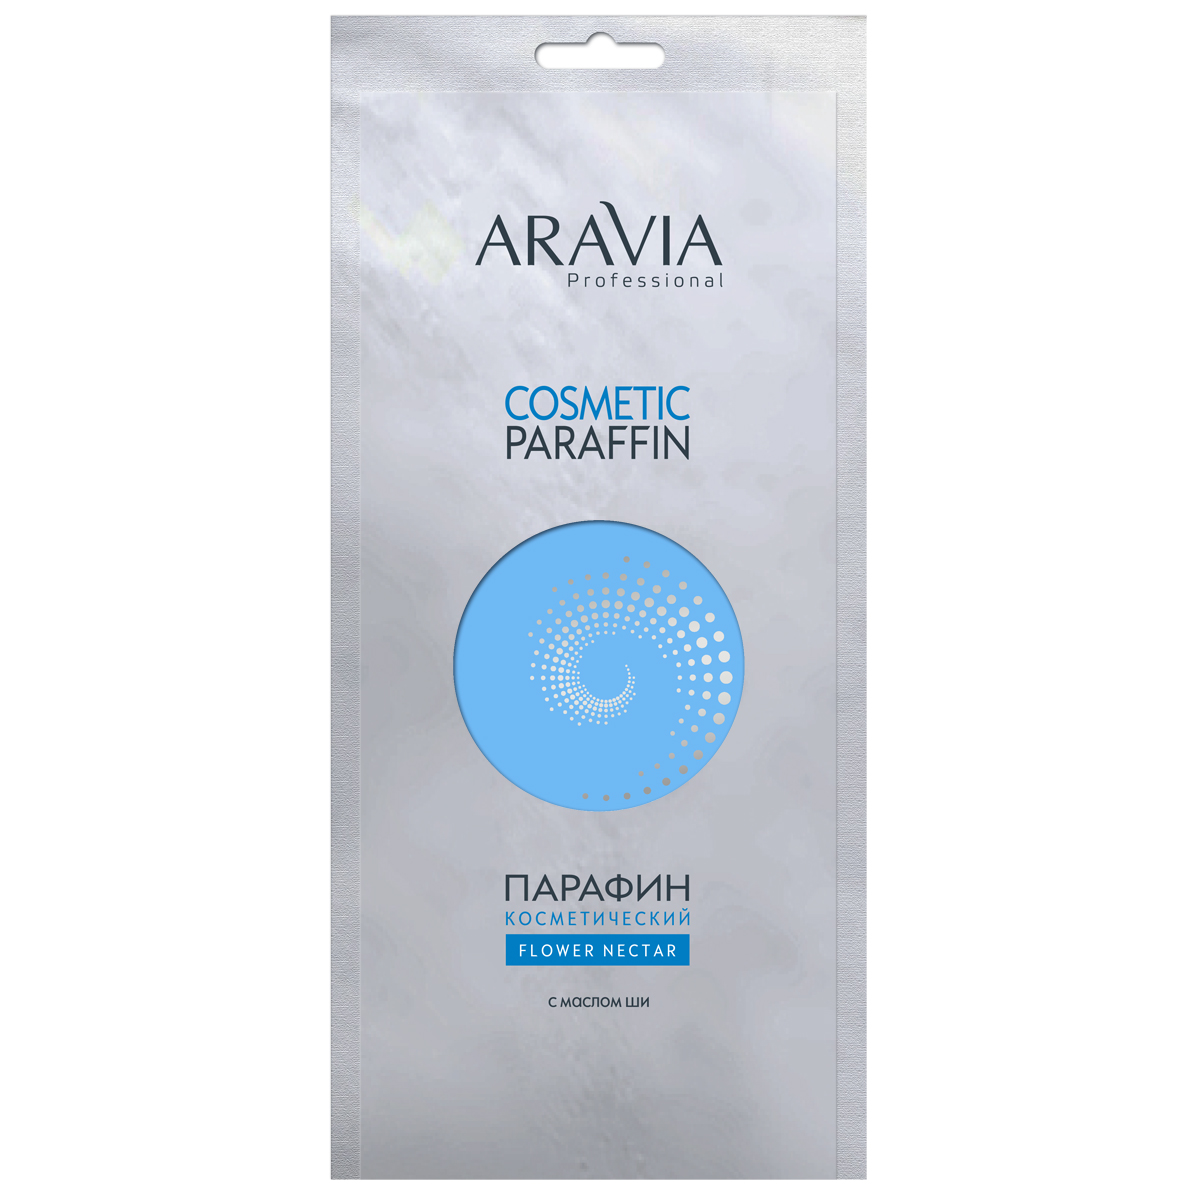 Aravia парафин цветочный нектар с маслом ши 500гр (р)